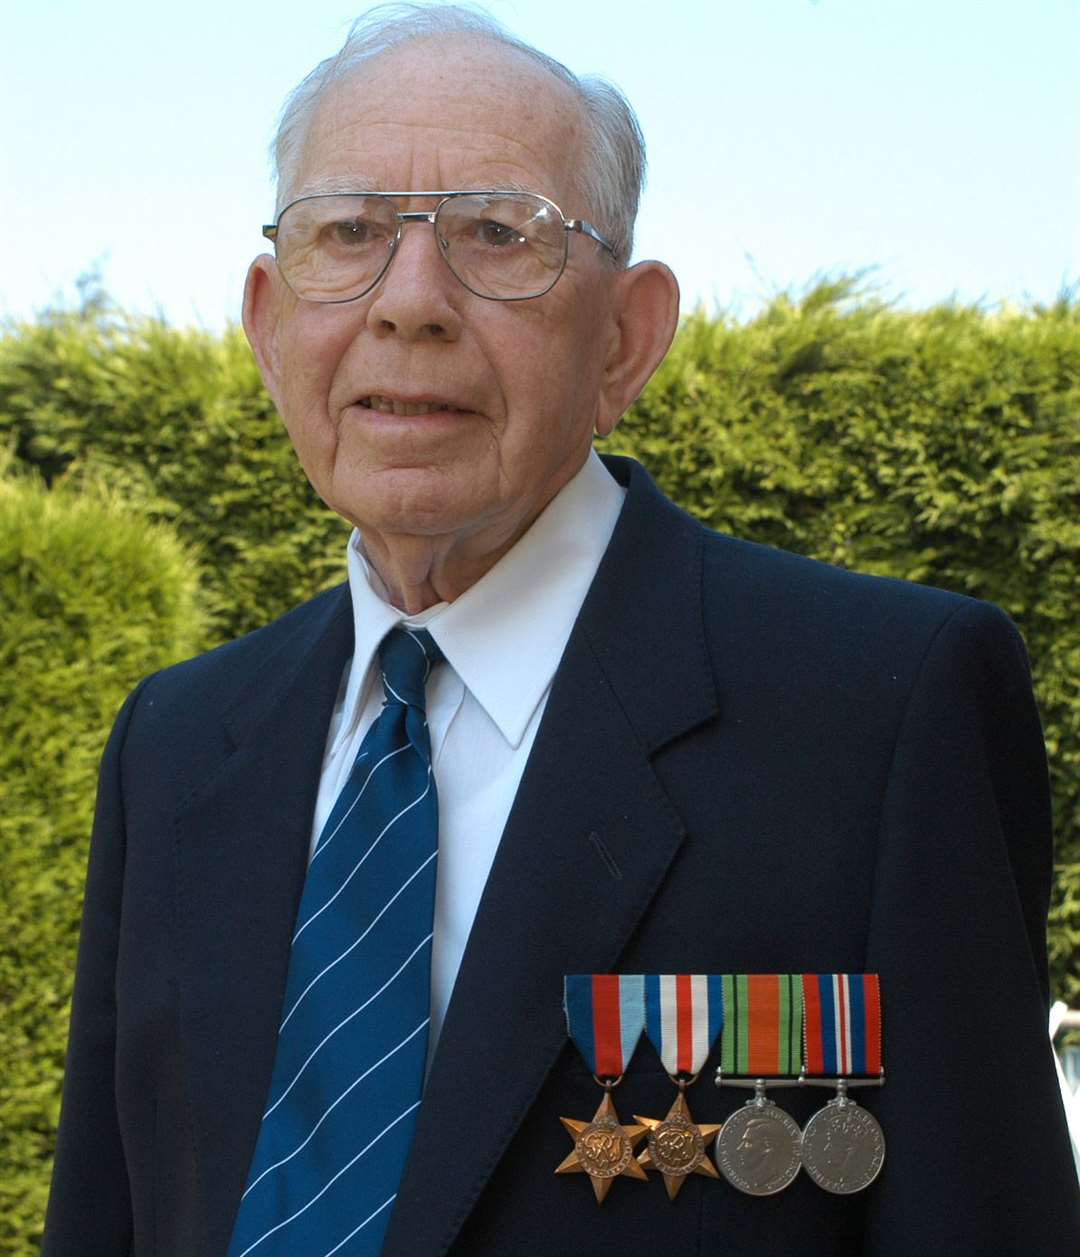 Veteran Harry Trimmings